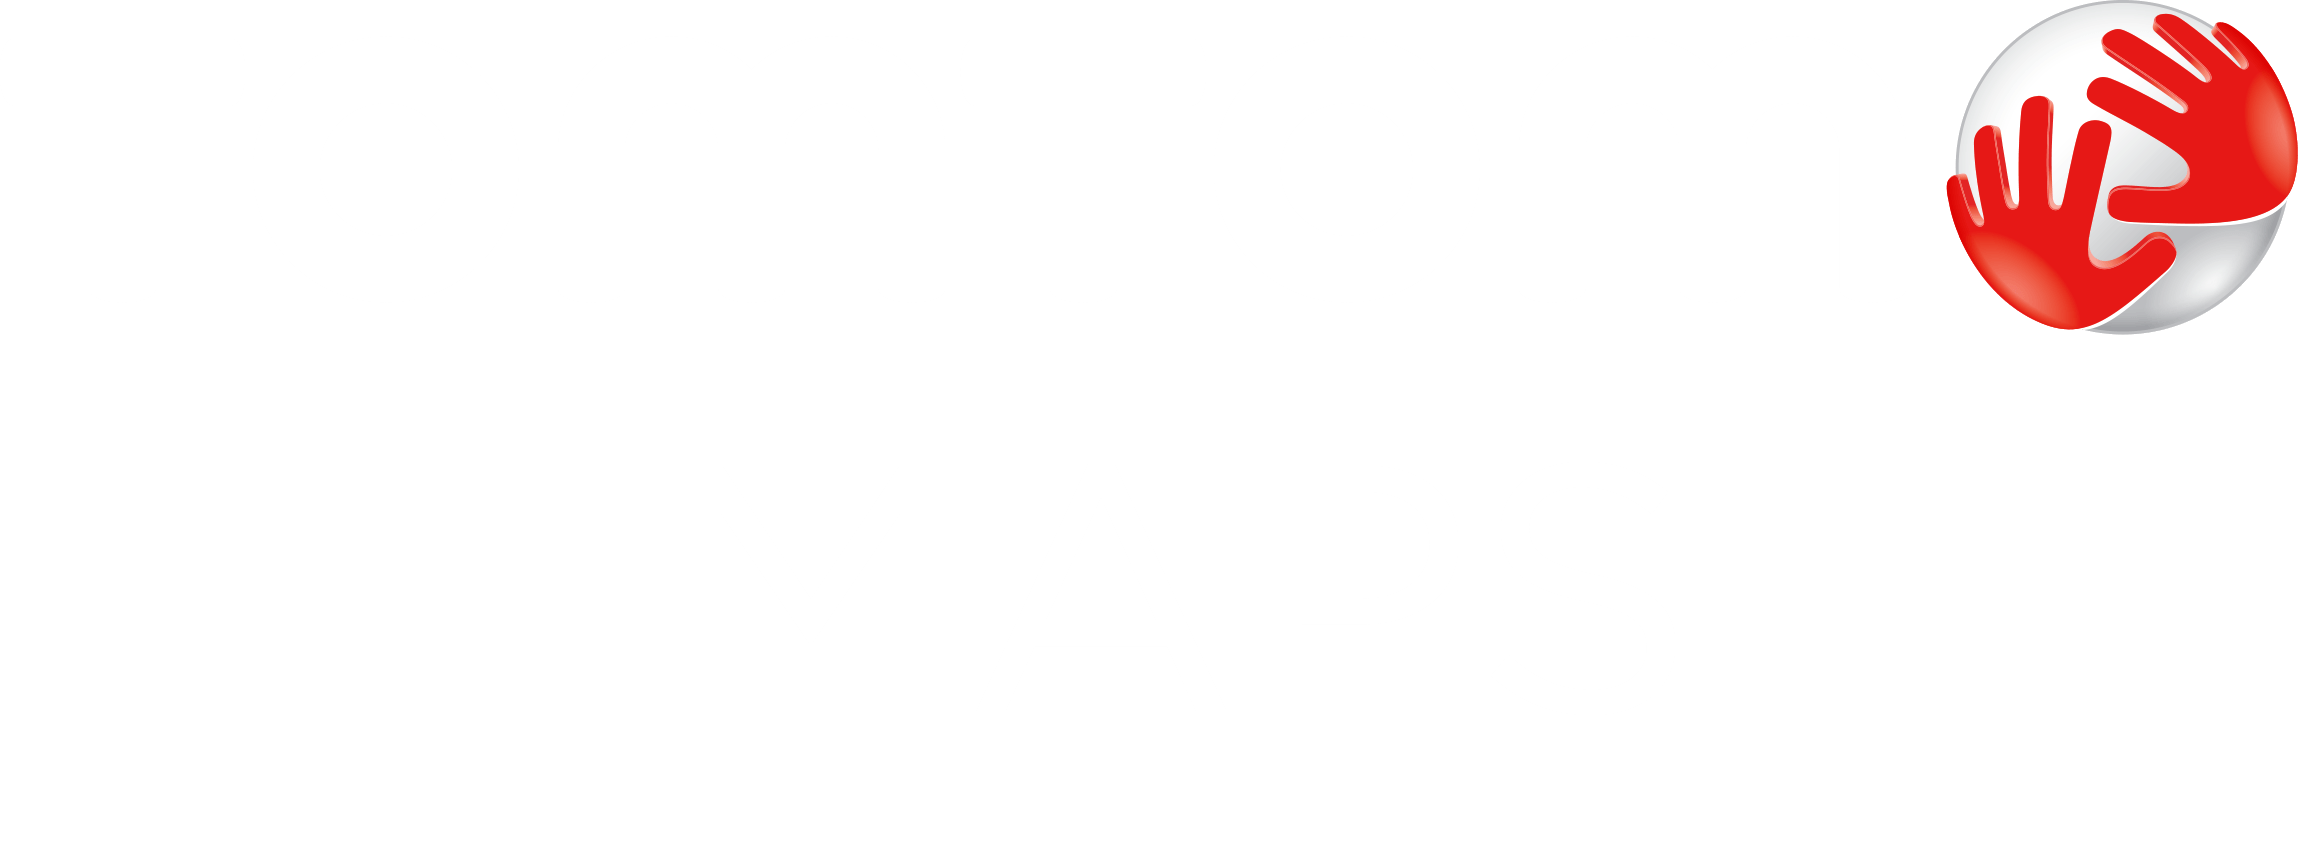 TomTom Logo - TomTom Maps | Home